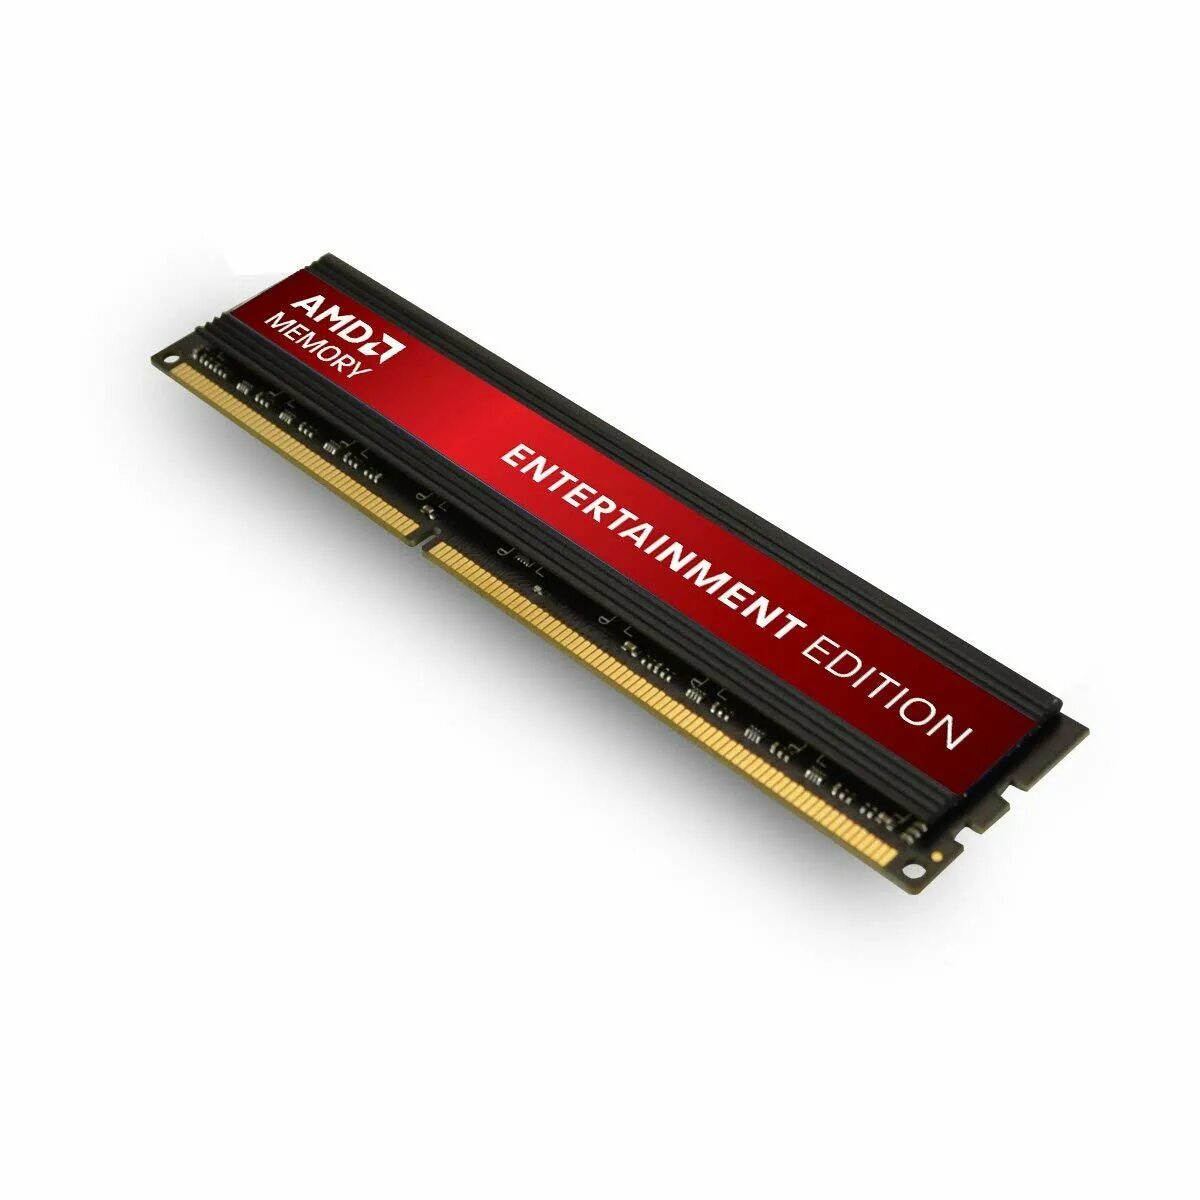 AMD Memory ddr3 4gb 1600 MHZ. Оперативная память AMD ddr3 4gb 1600mhz. AMD r538g1601u2s-uo Black ddr3. Оперативная память ddr3 AMD 8gb.